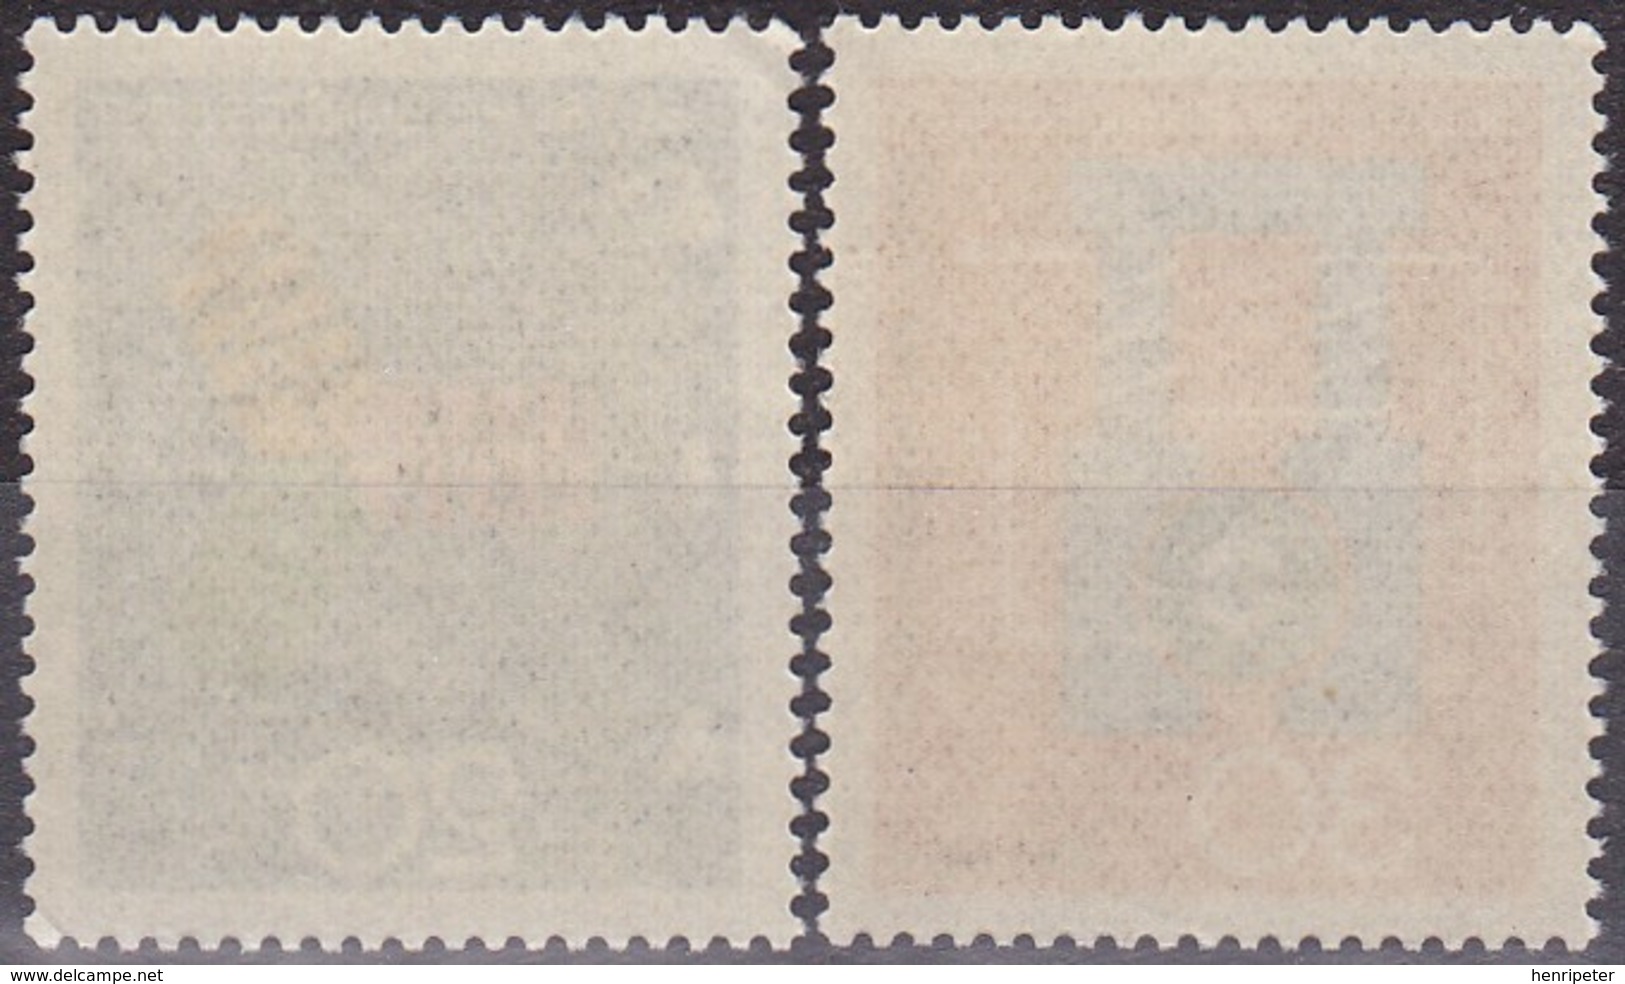 Série De 2 Timbres-poste Neufs** - Transmission Triphasée Dynamo électrique - N° 378-379 (Yvert) - RFA 1966 - Unused Stamps